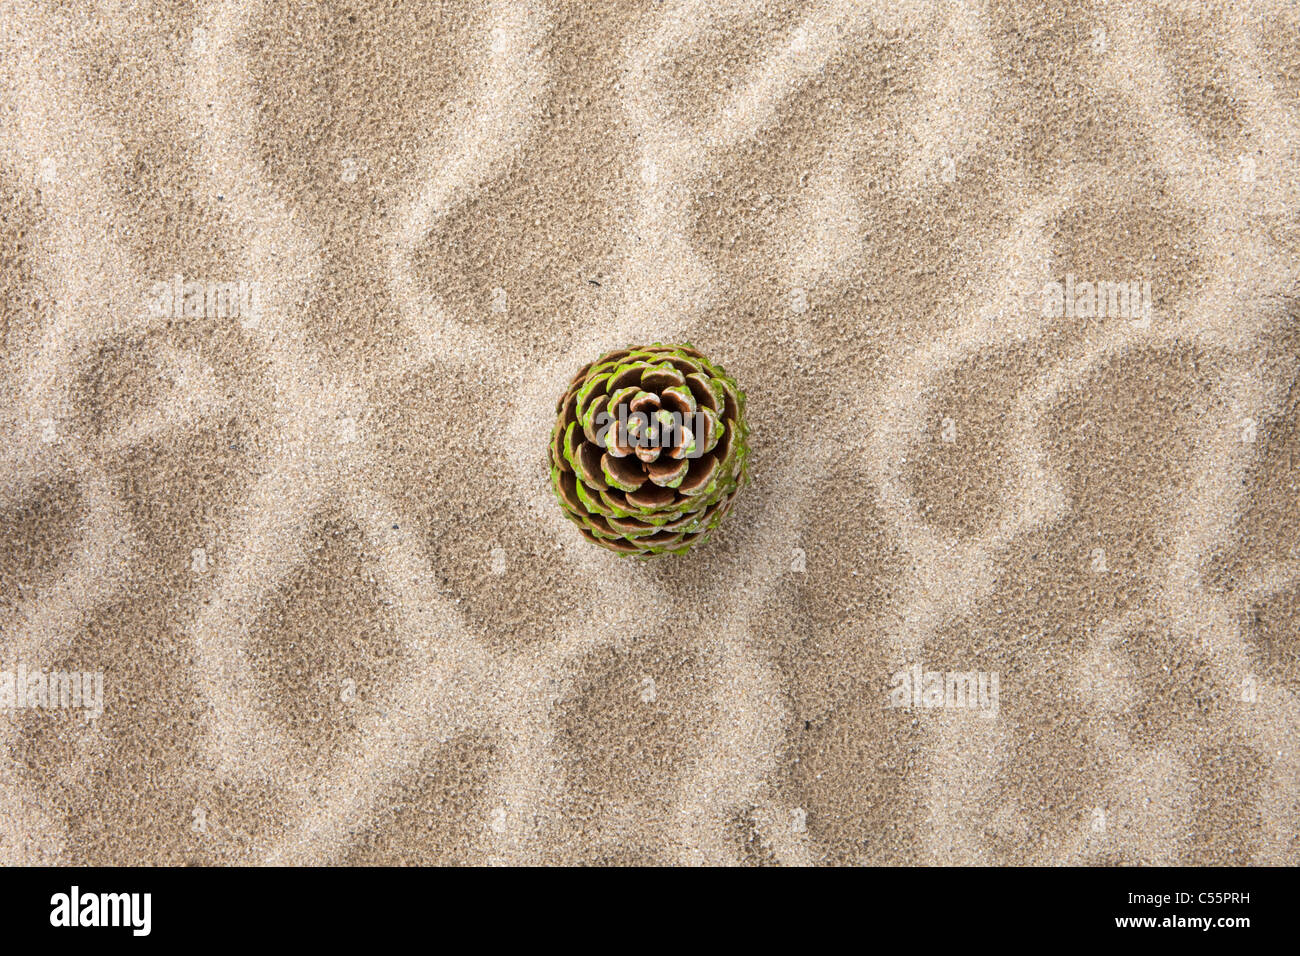 The Netherlands, Loon op Zand, National Park De Loonse en Drunense Duinen. Fir cone in sand. Stock Photo